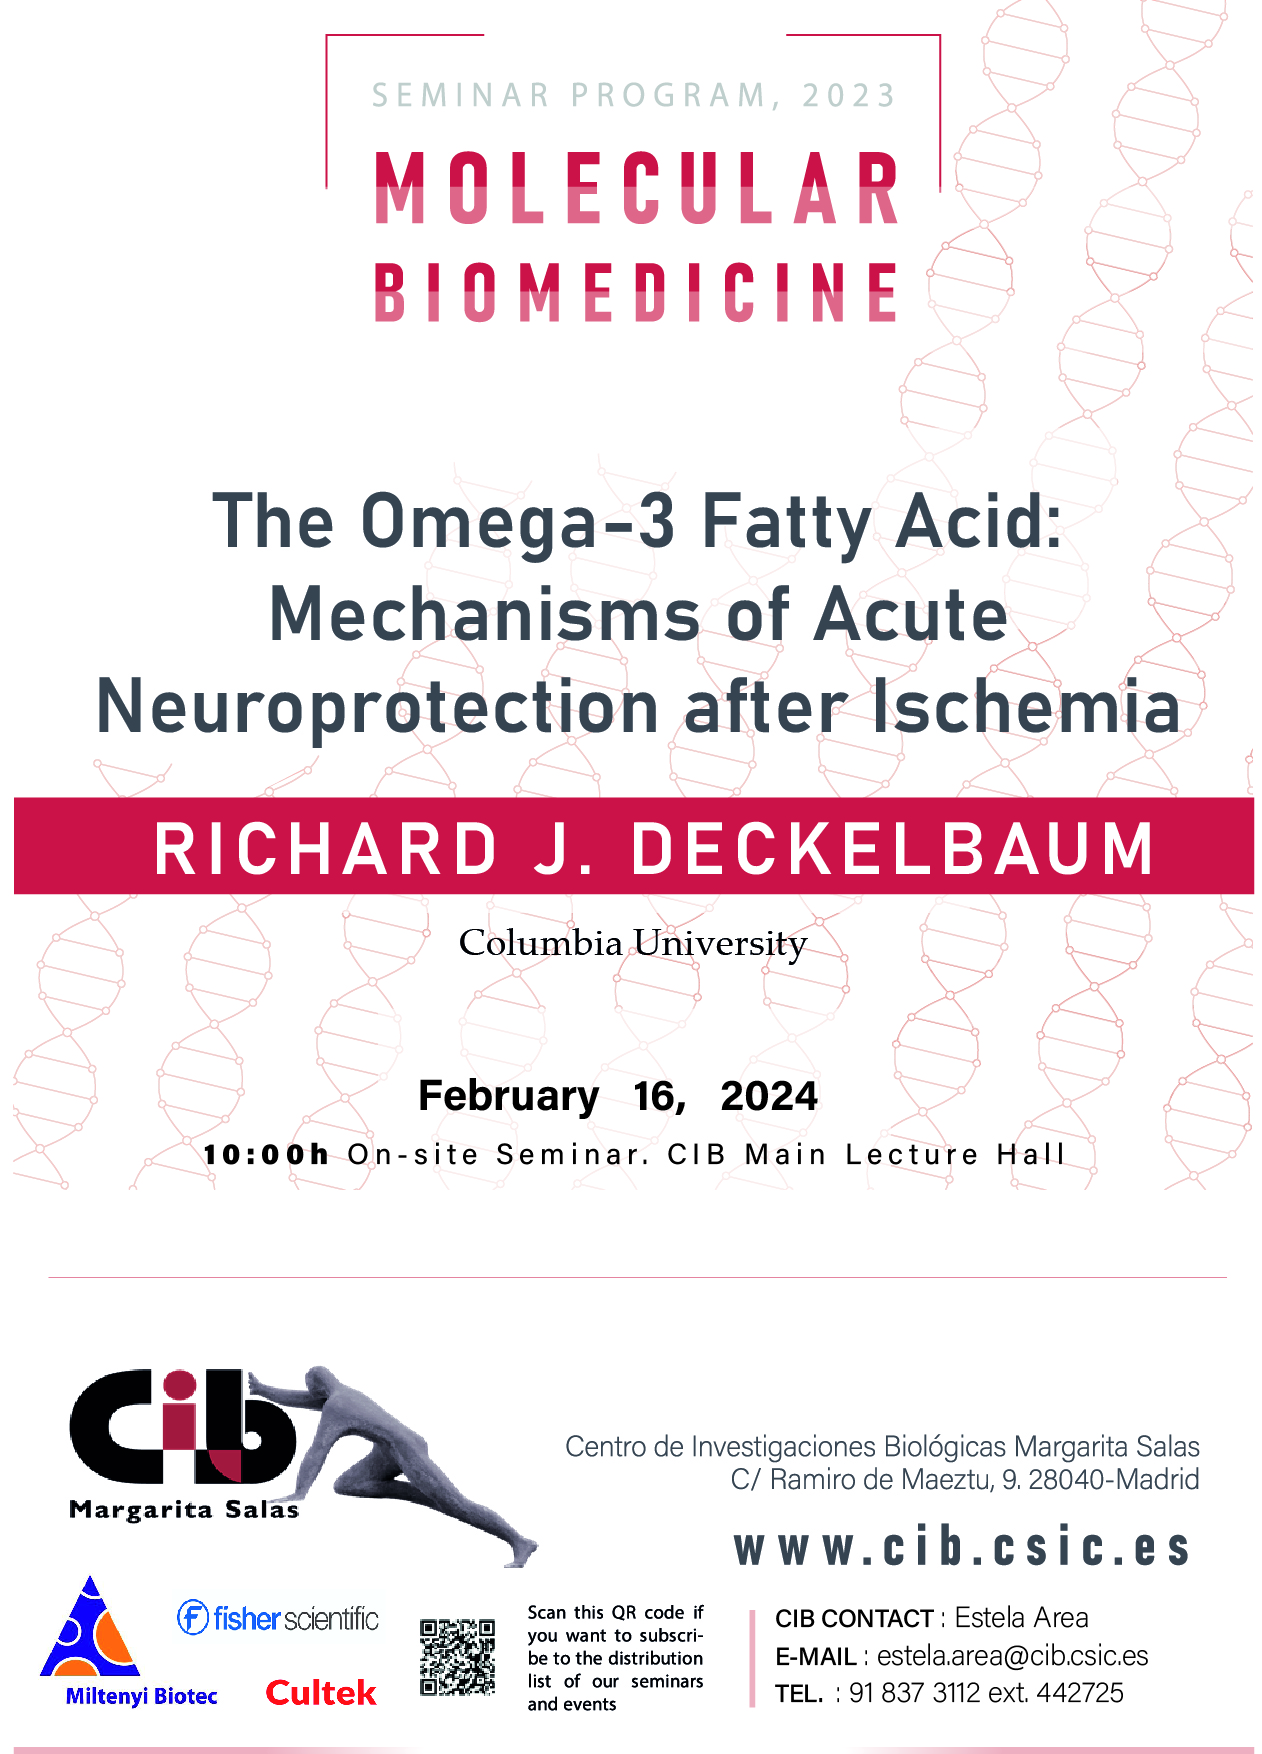 Cartel del seminario de Richard J. Deckelbaum del 16 de febrero de 2024